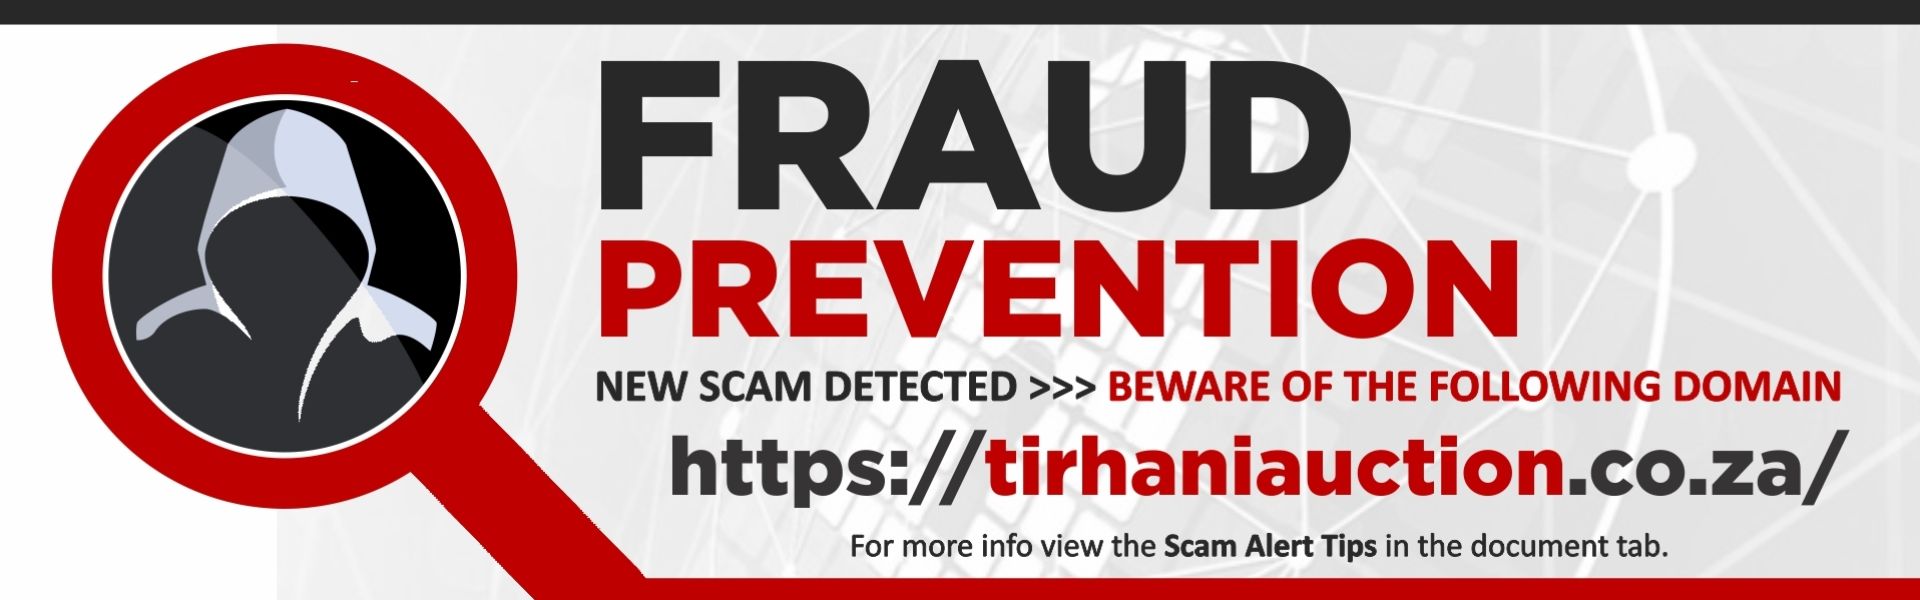 Fraud homepage-2